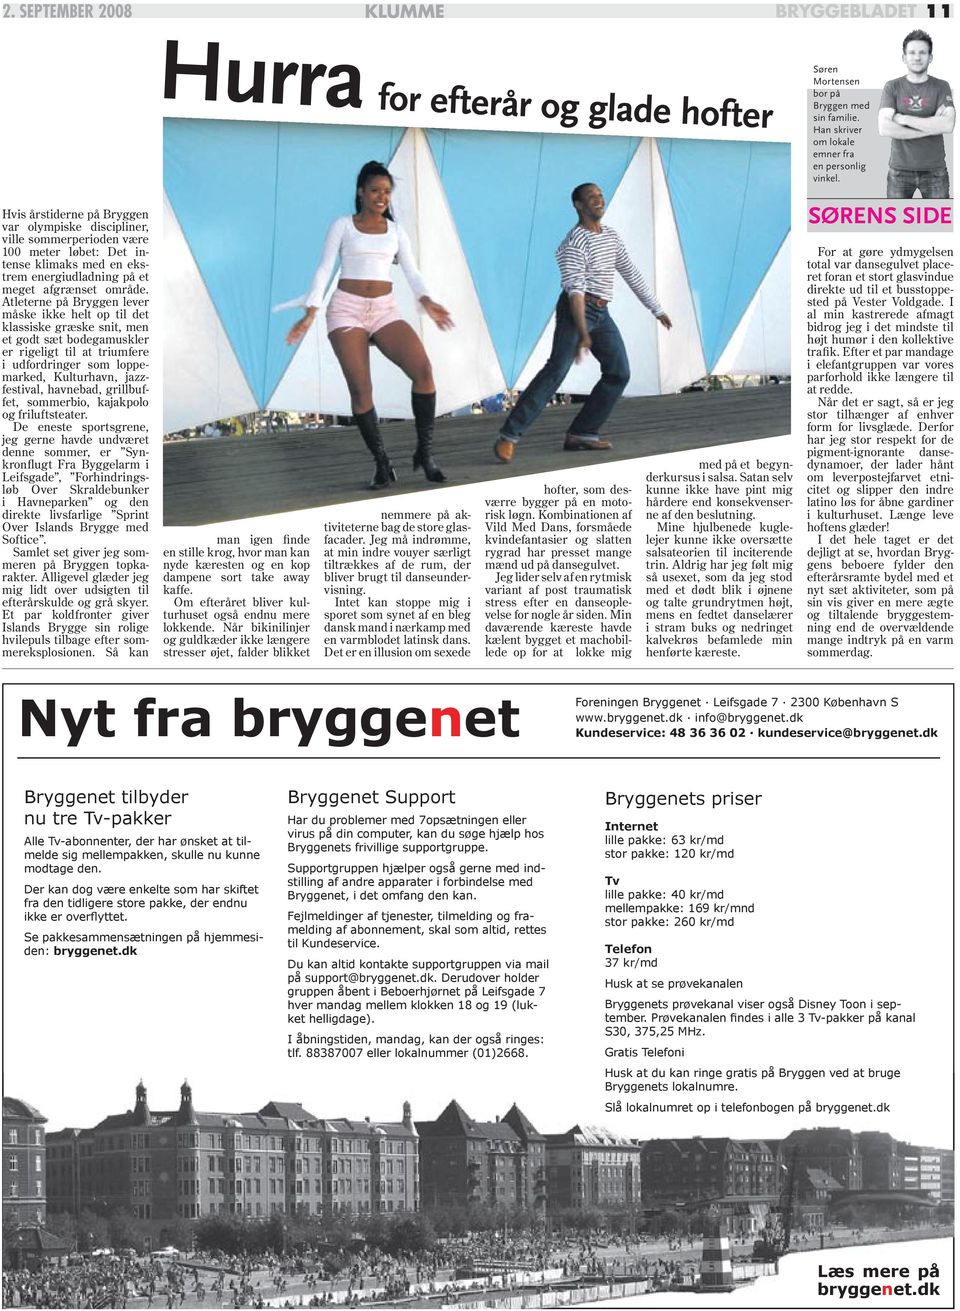 Atleterne på Bryggen lever måske ikke helt op til det klassiske græske snit, men et godt sæt bodegamuskler er rigeligt til at triumfere i udfordringer som loppemarked, Kulturhavn, jazzfestival,